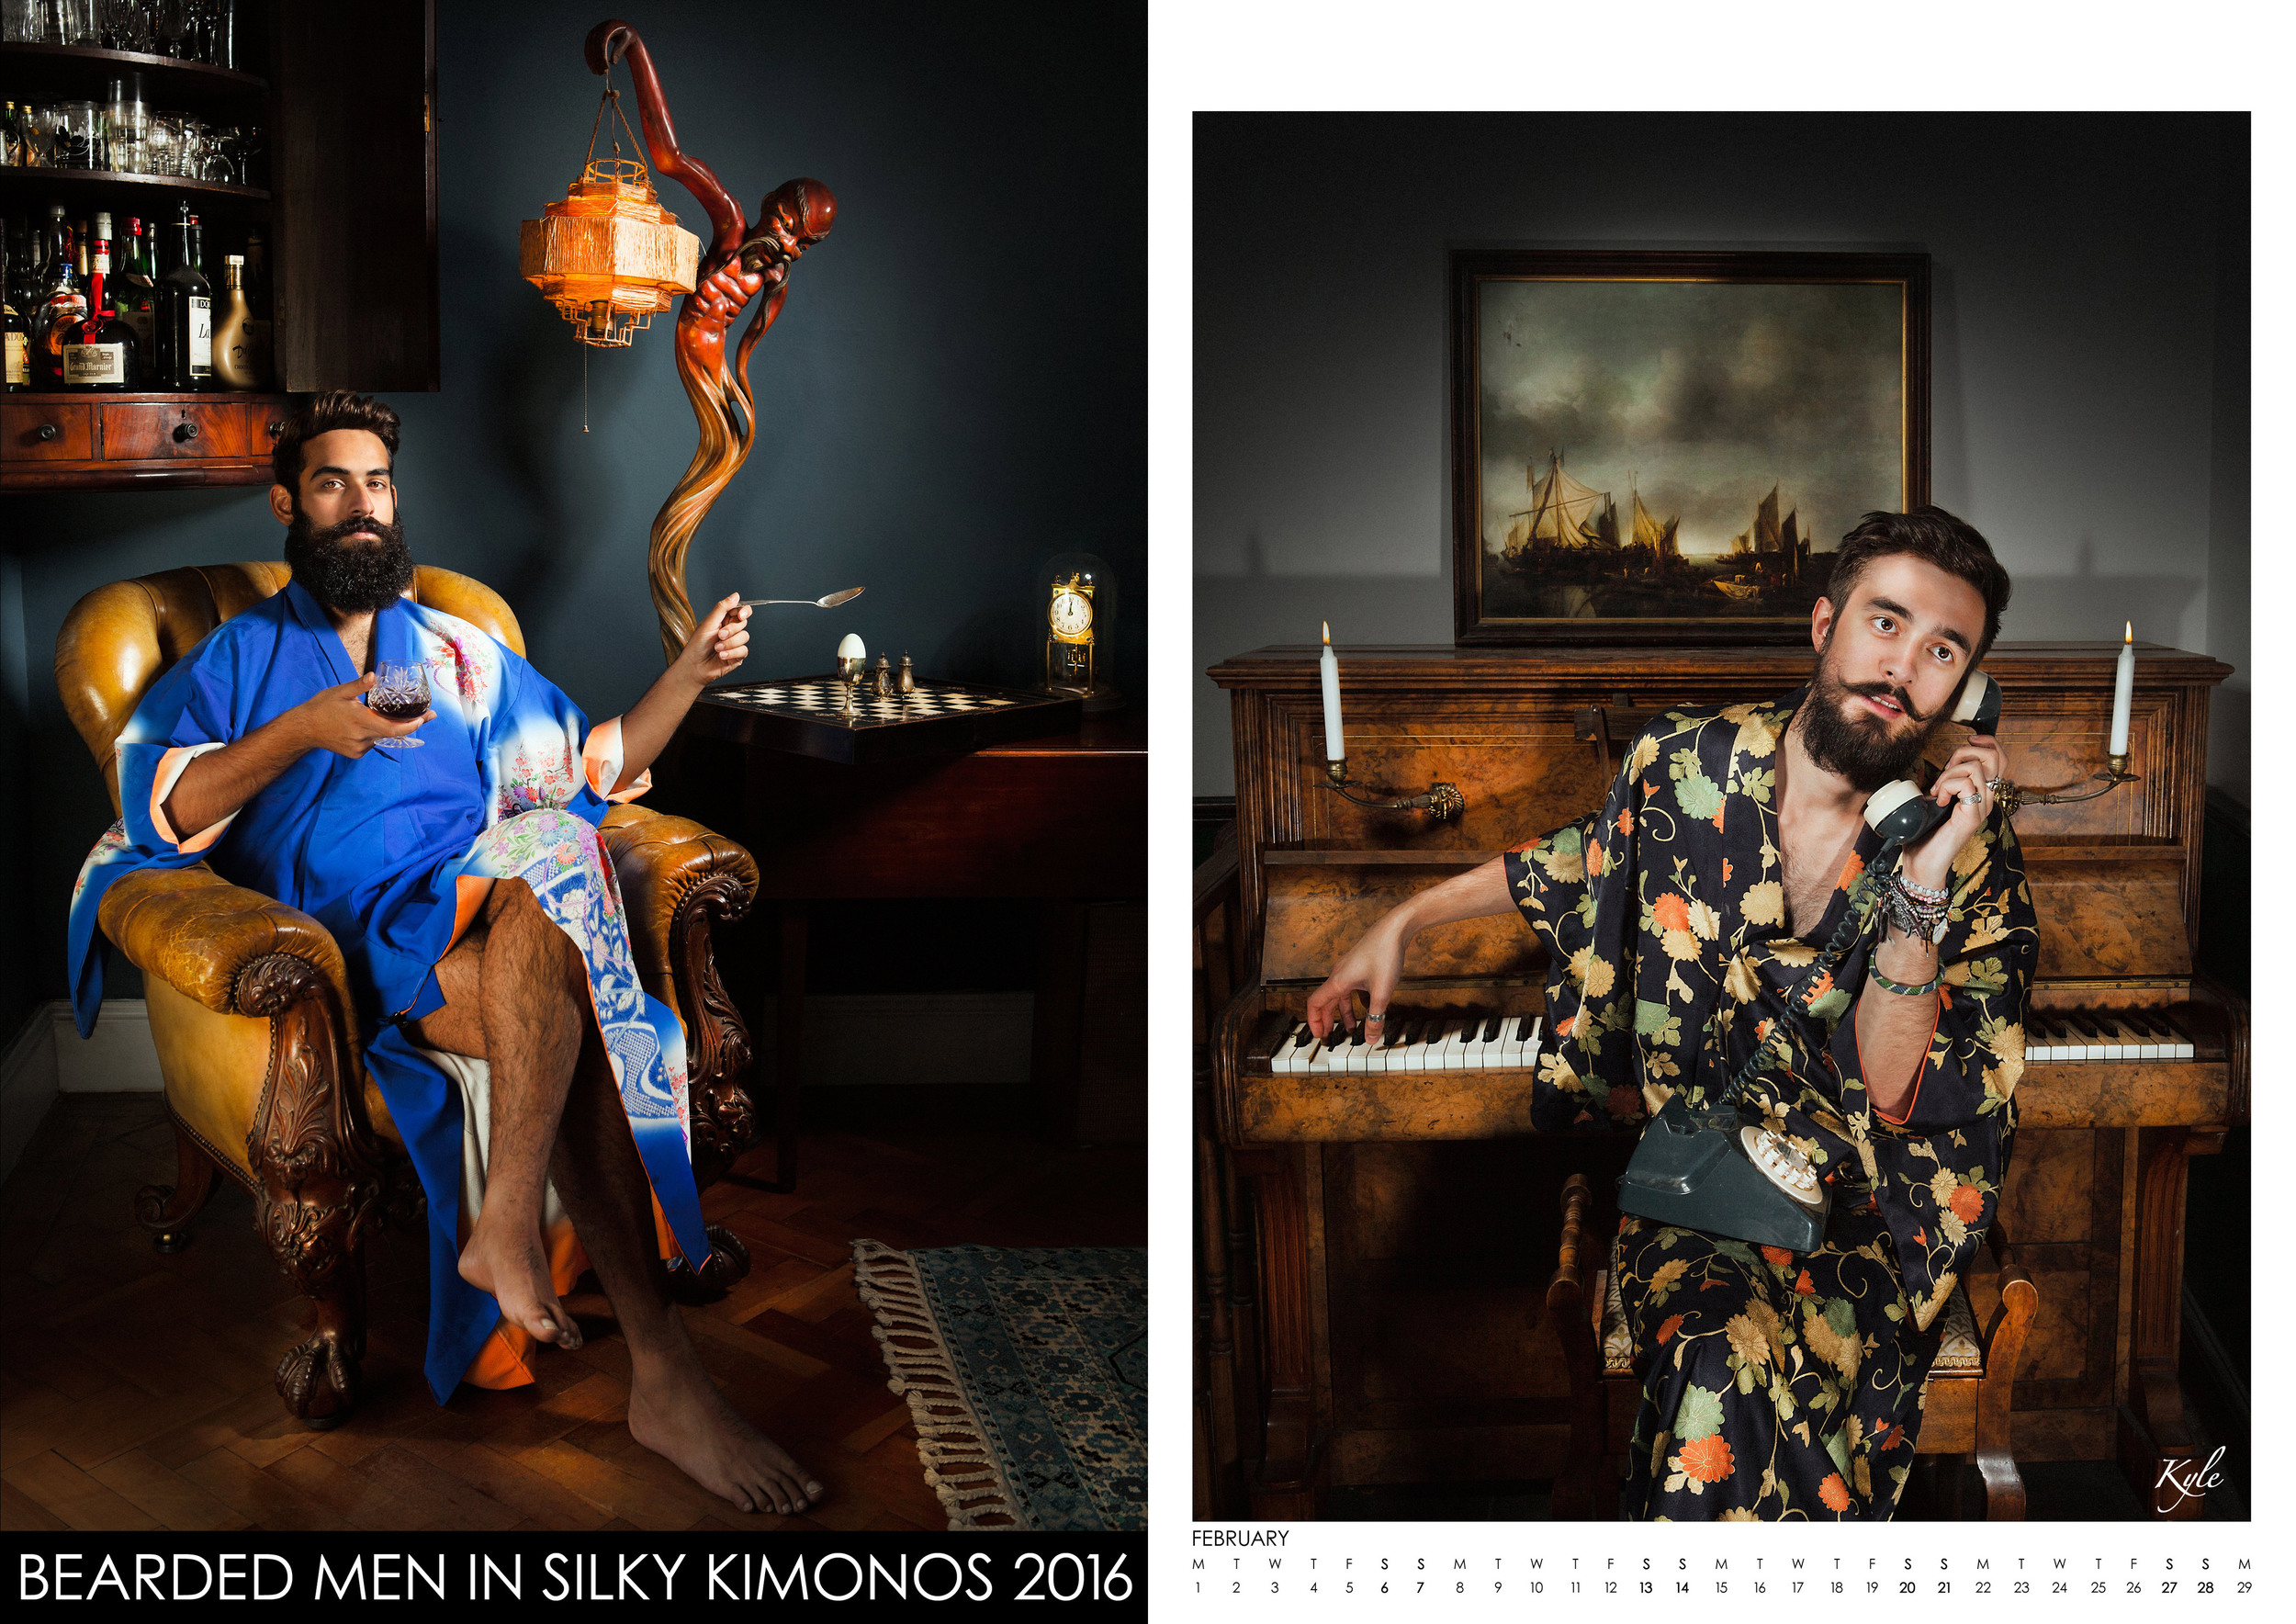 «Bearded Men In Silky Kimonos» calendar 2016